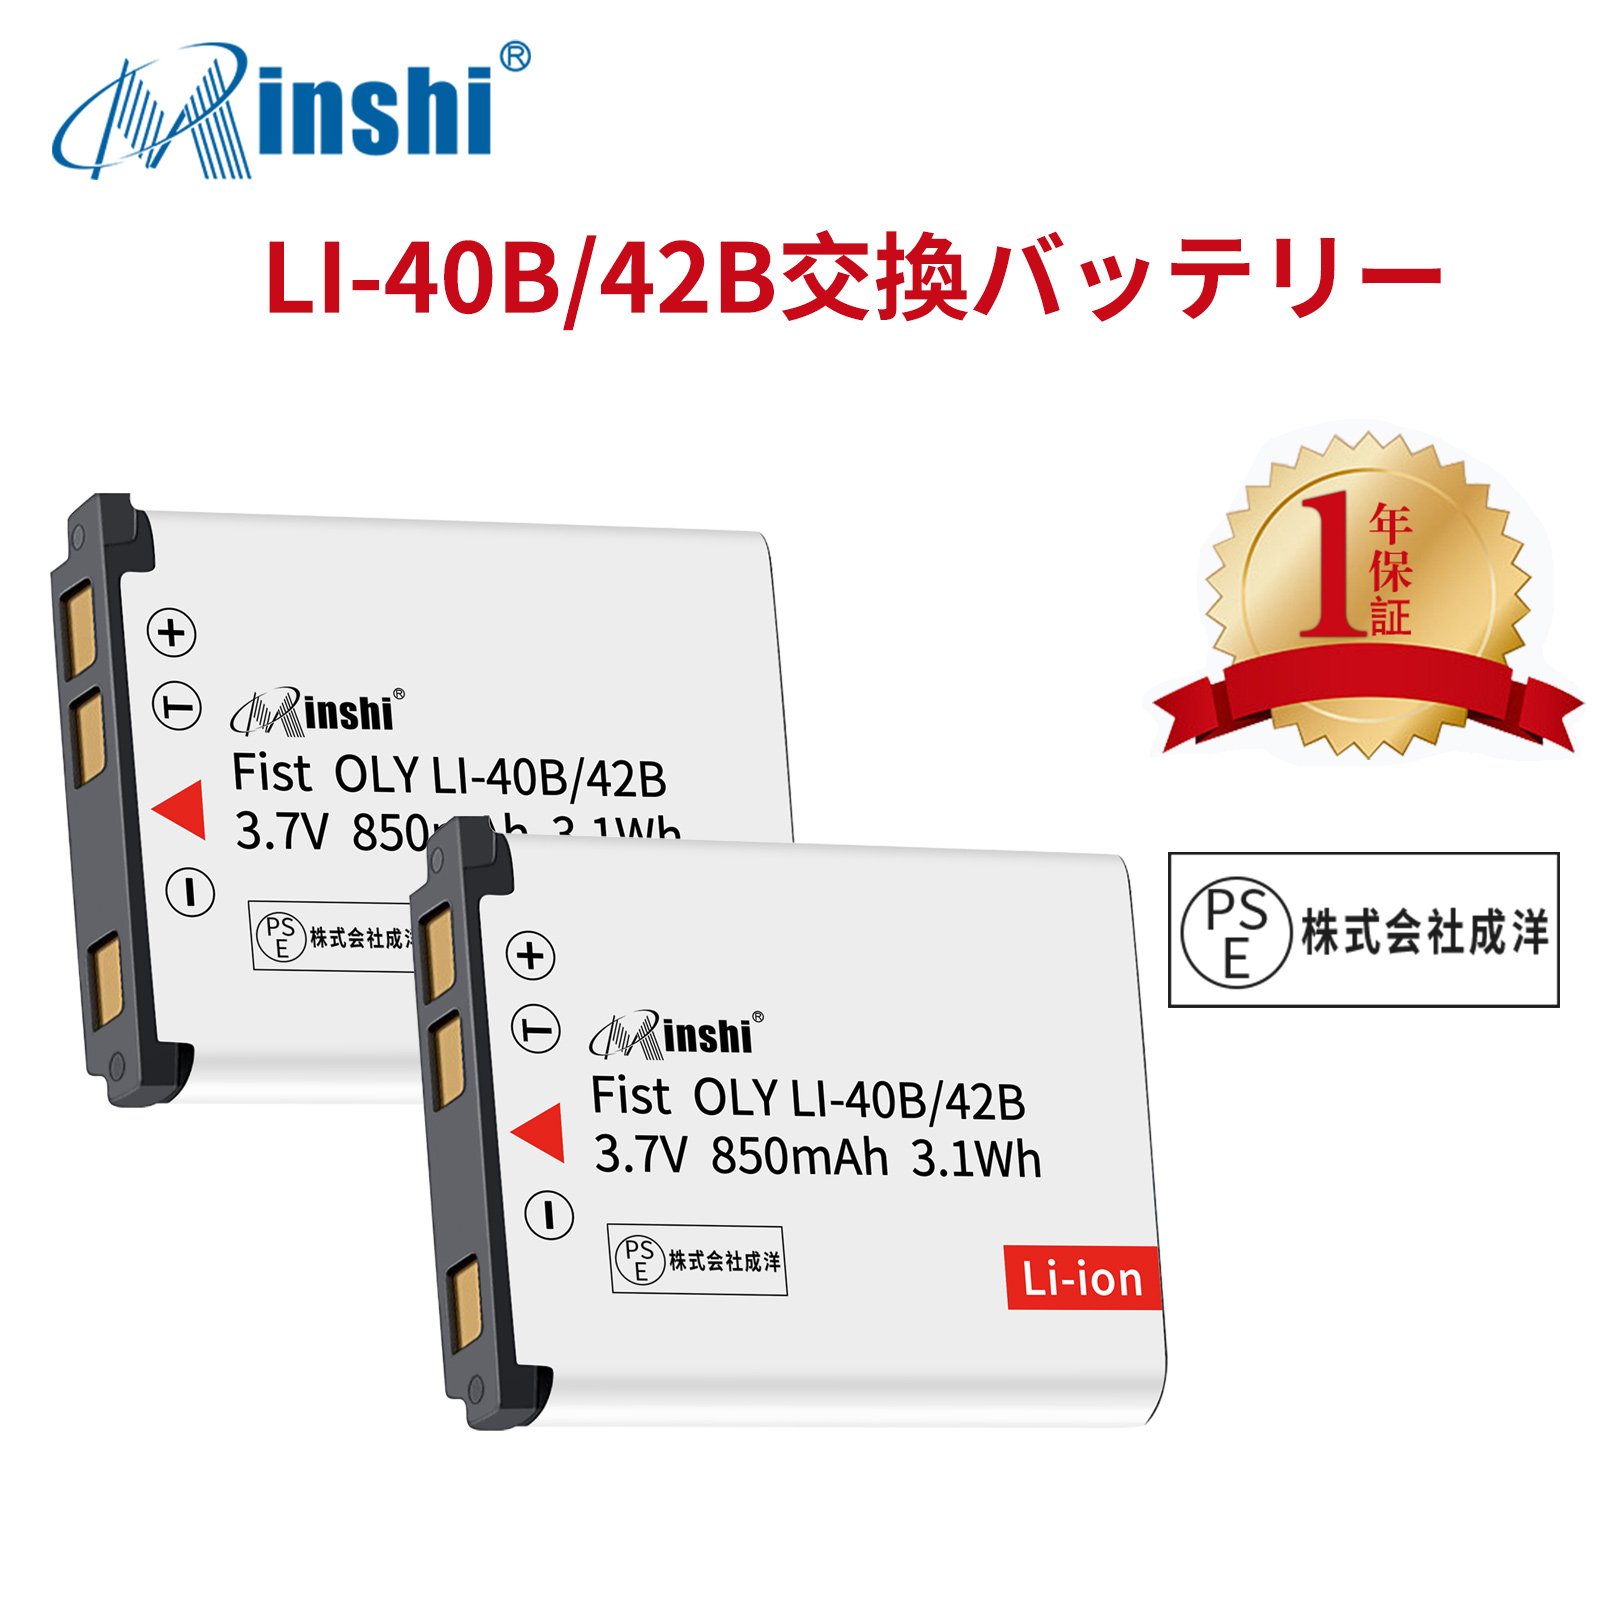 【２個セット】minshi OLYMPUS Kllc-7006 LI-42B【850mAh 3.7V】PSE認定済 高品質交換用バッテリー